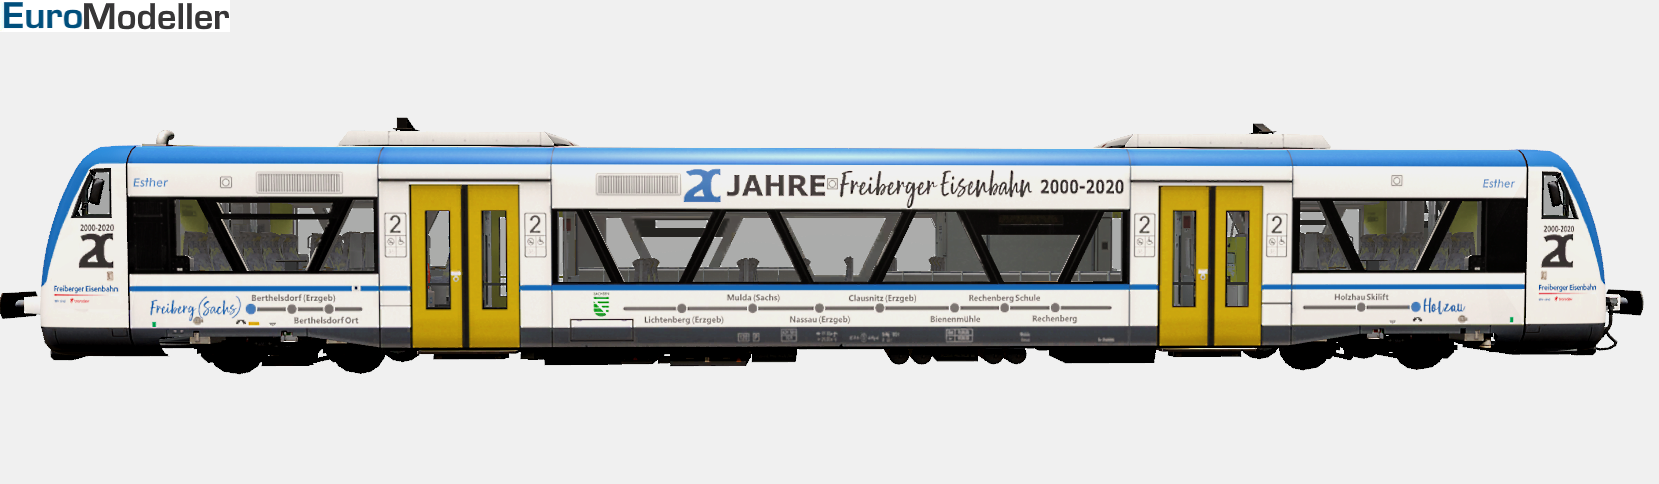 RS1, Freiberger Eisenbahn 2000-2020